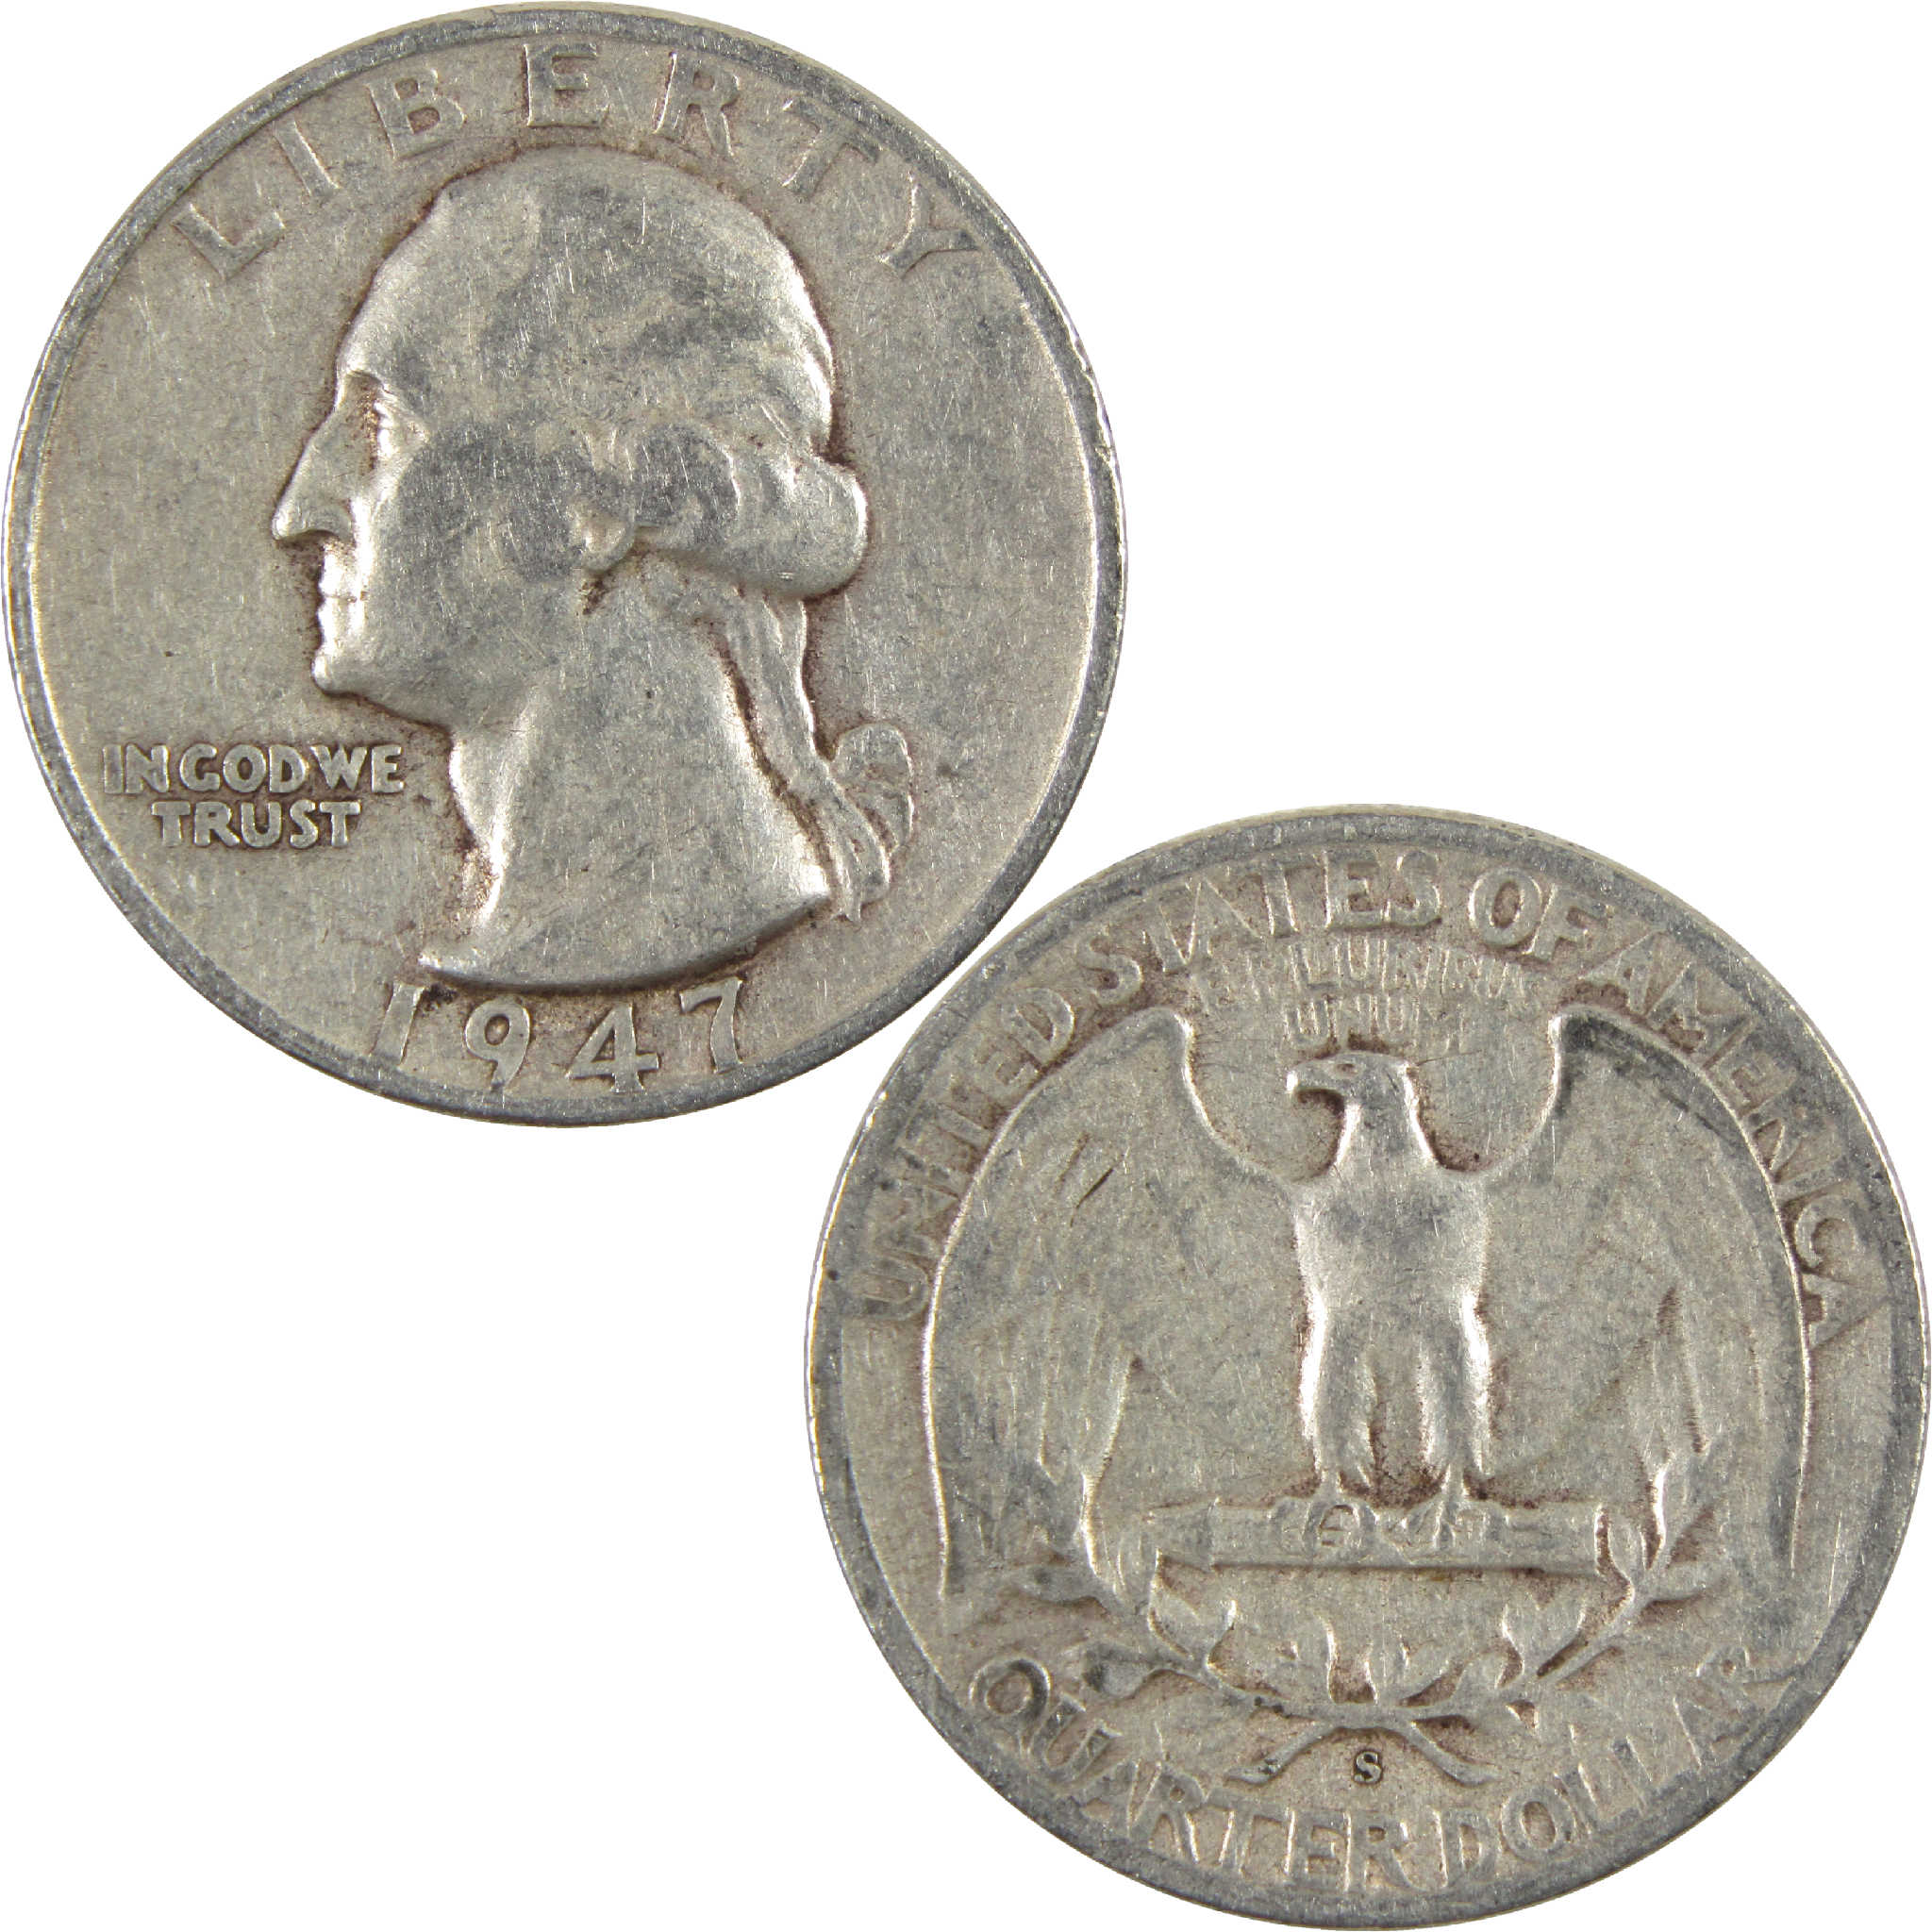 1947 S Washington Quarter VG Very Good Silver 25c Coin